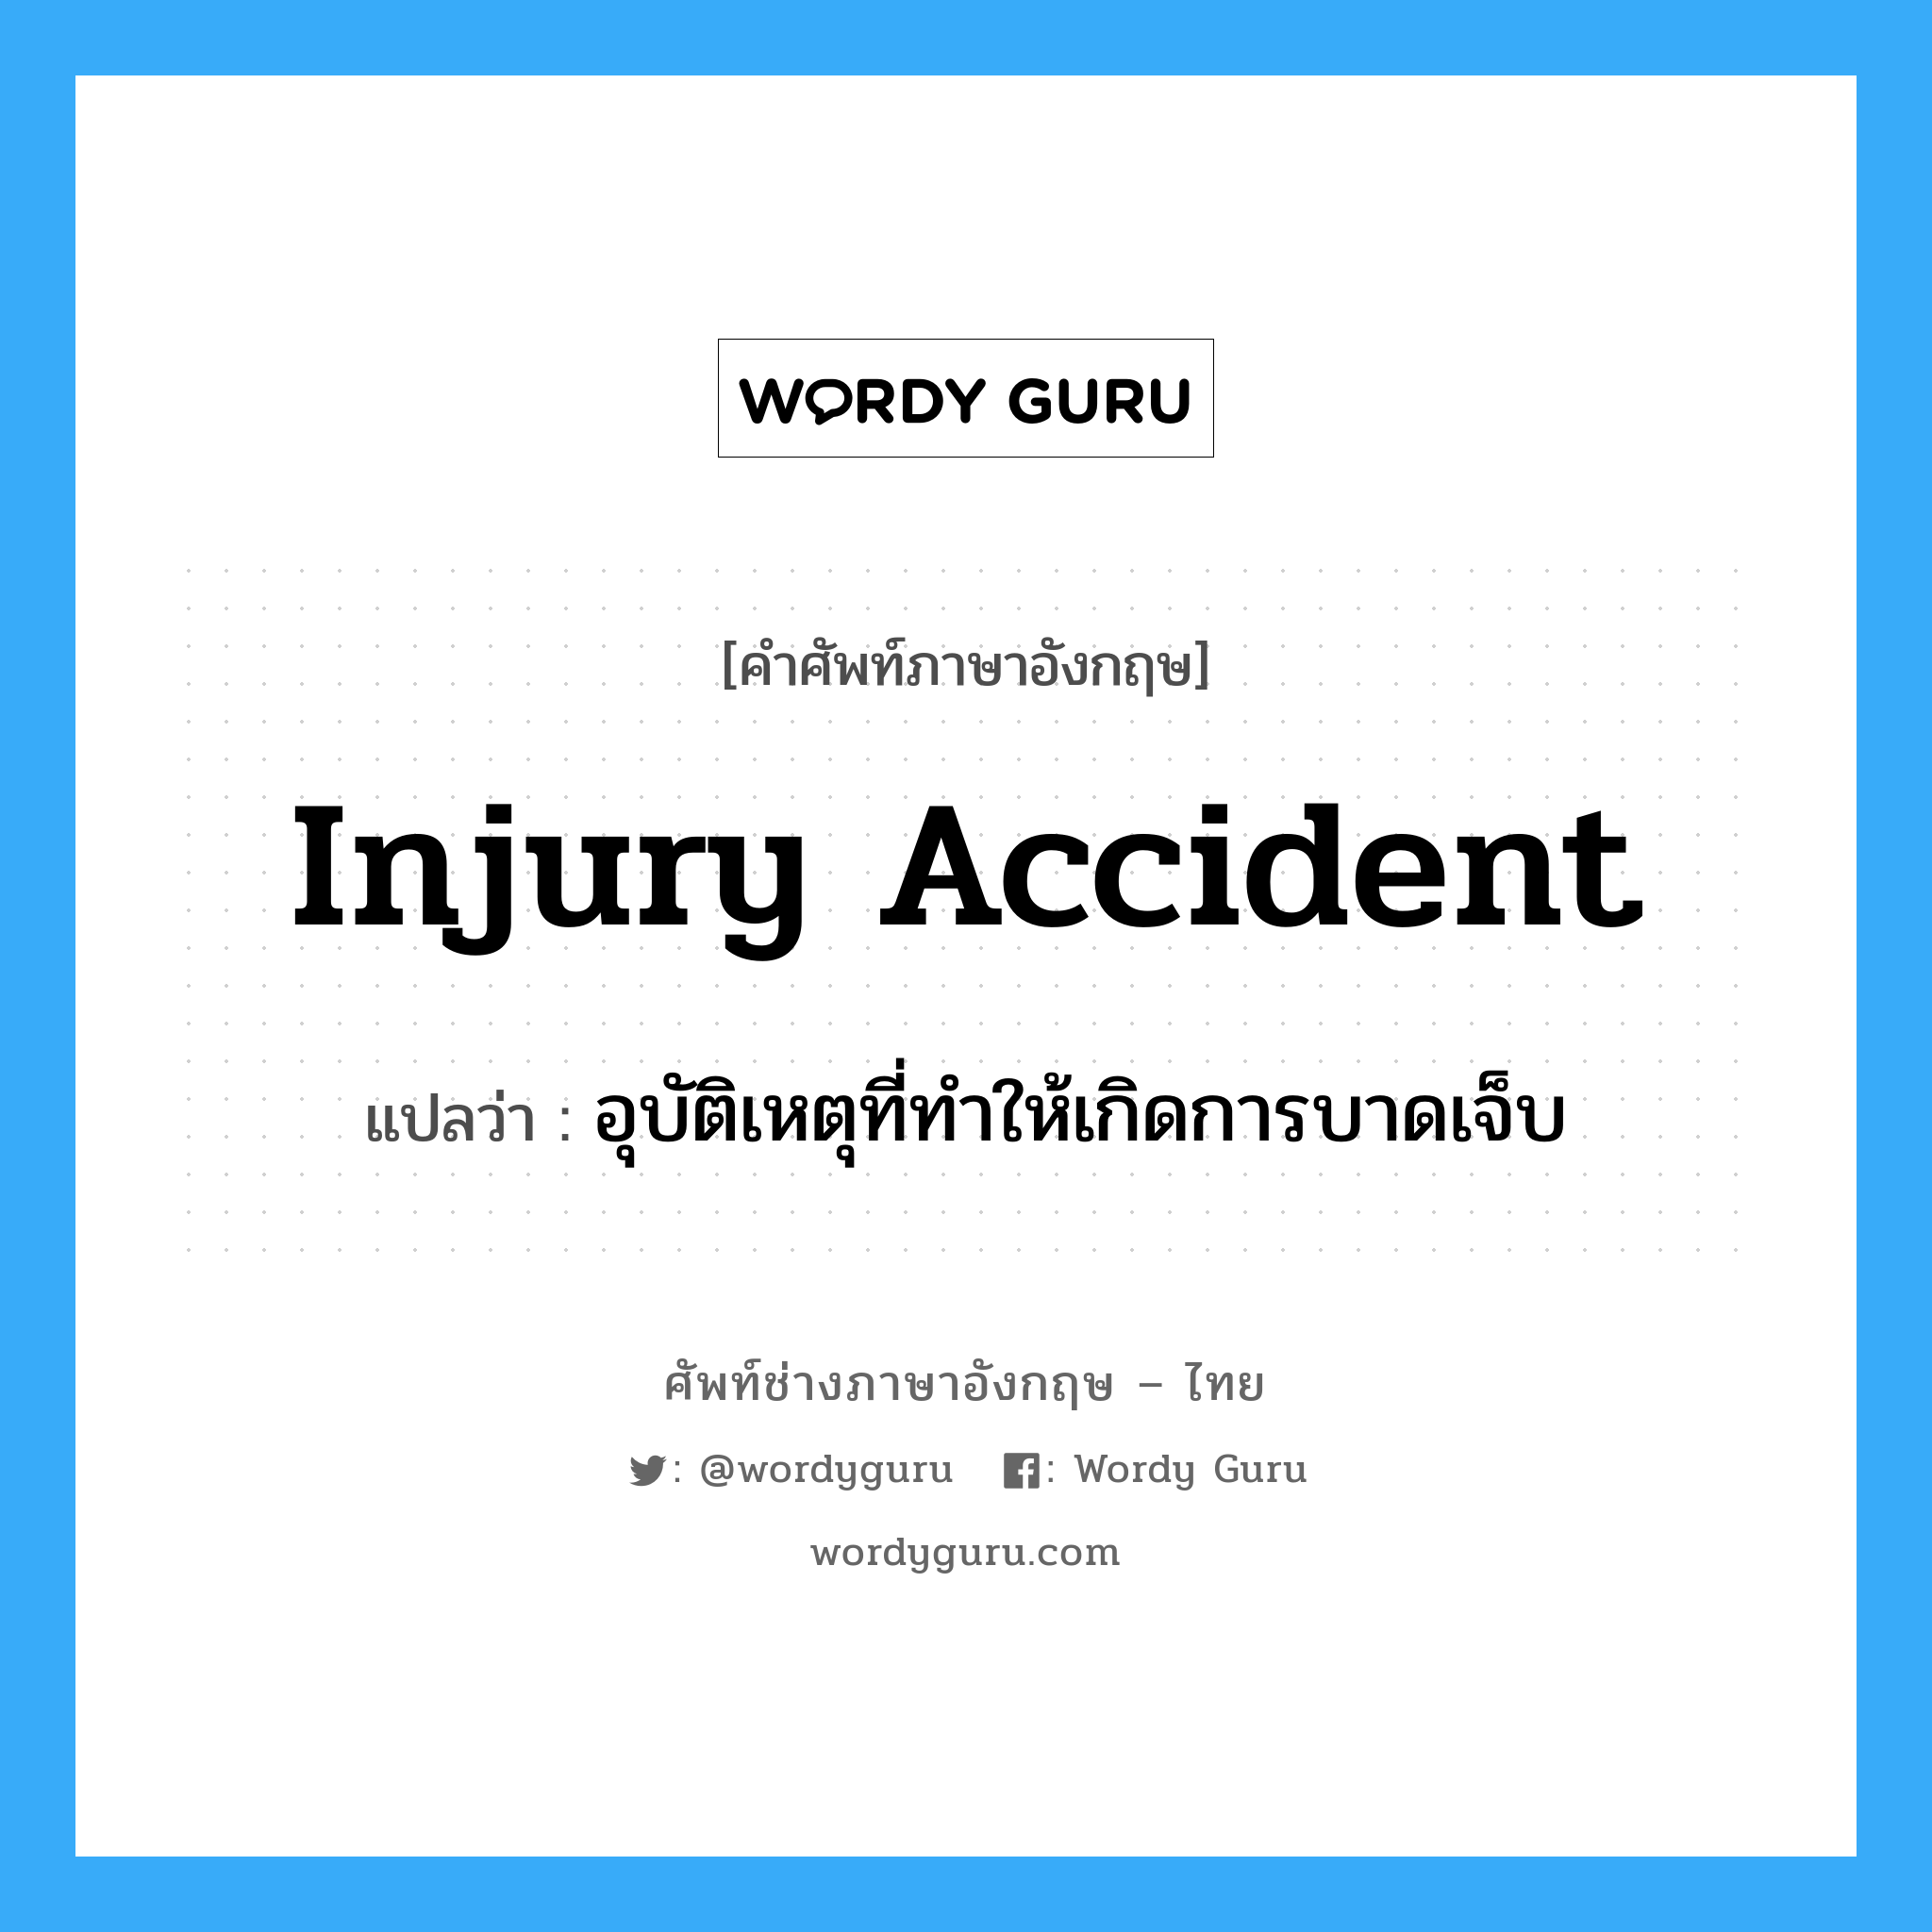 อุบัติเหตุที่ทำให้เกิดการบาดเจ็บ ภาษาอังกฤษ?, คำศัพท์ช่างภาษาอังกฤษ - ไทย อุบัติเหตุที่ทำให้เกิดการบาดเจ็บ คำศัพท์ภาษาอังกฤษ อุบัติเหตุที่ทำให้เกิดการบาดเจ็บ แปลว่า Injury Accident